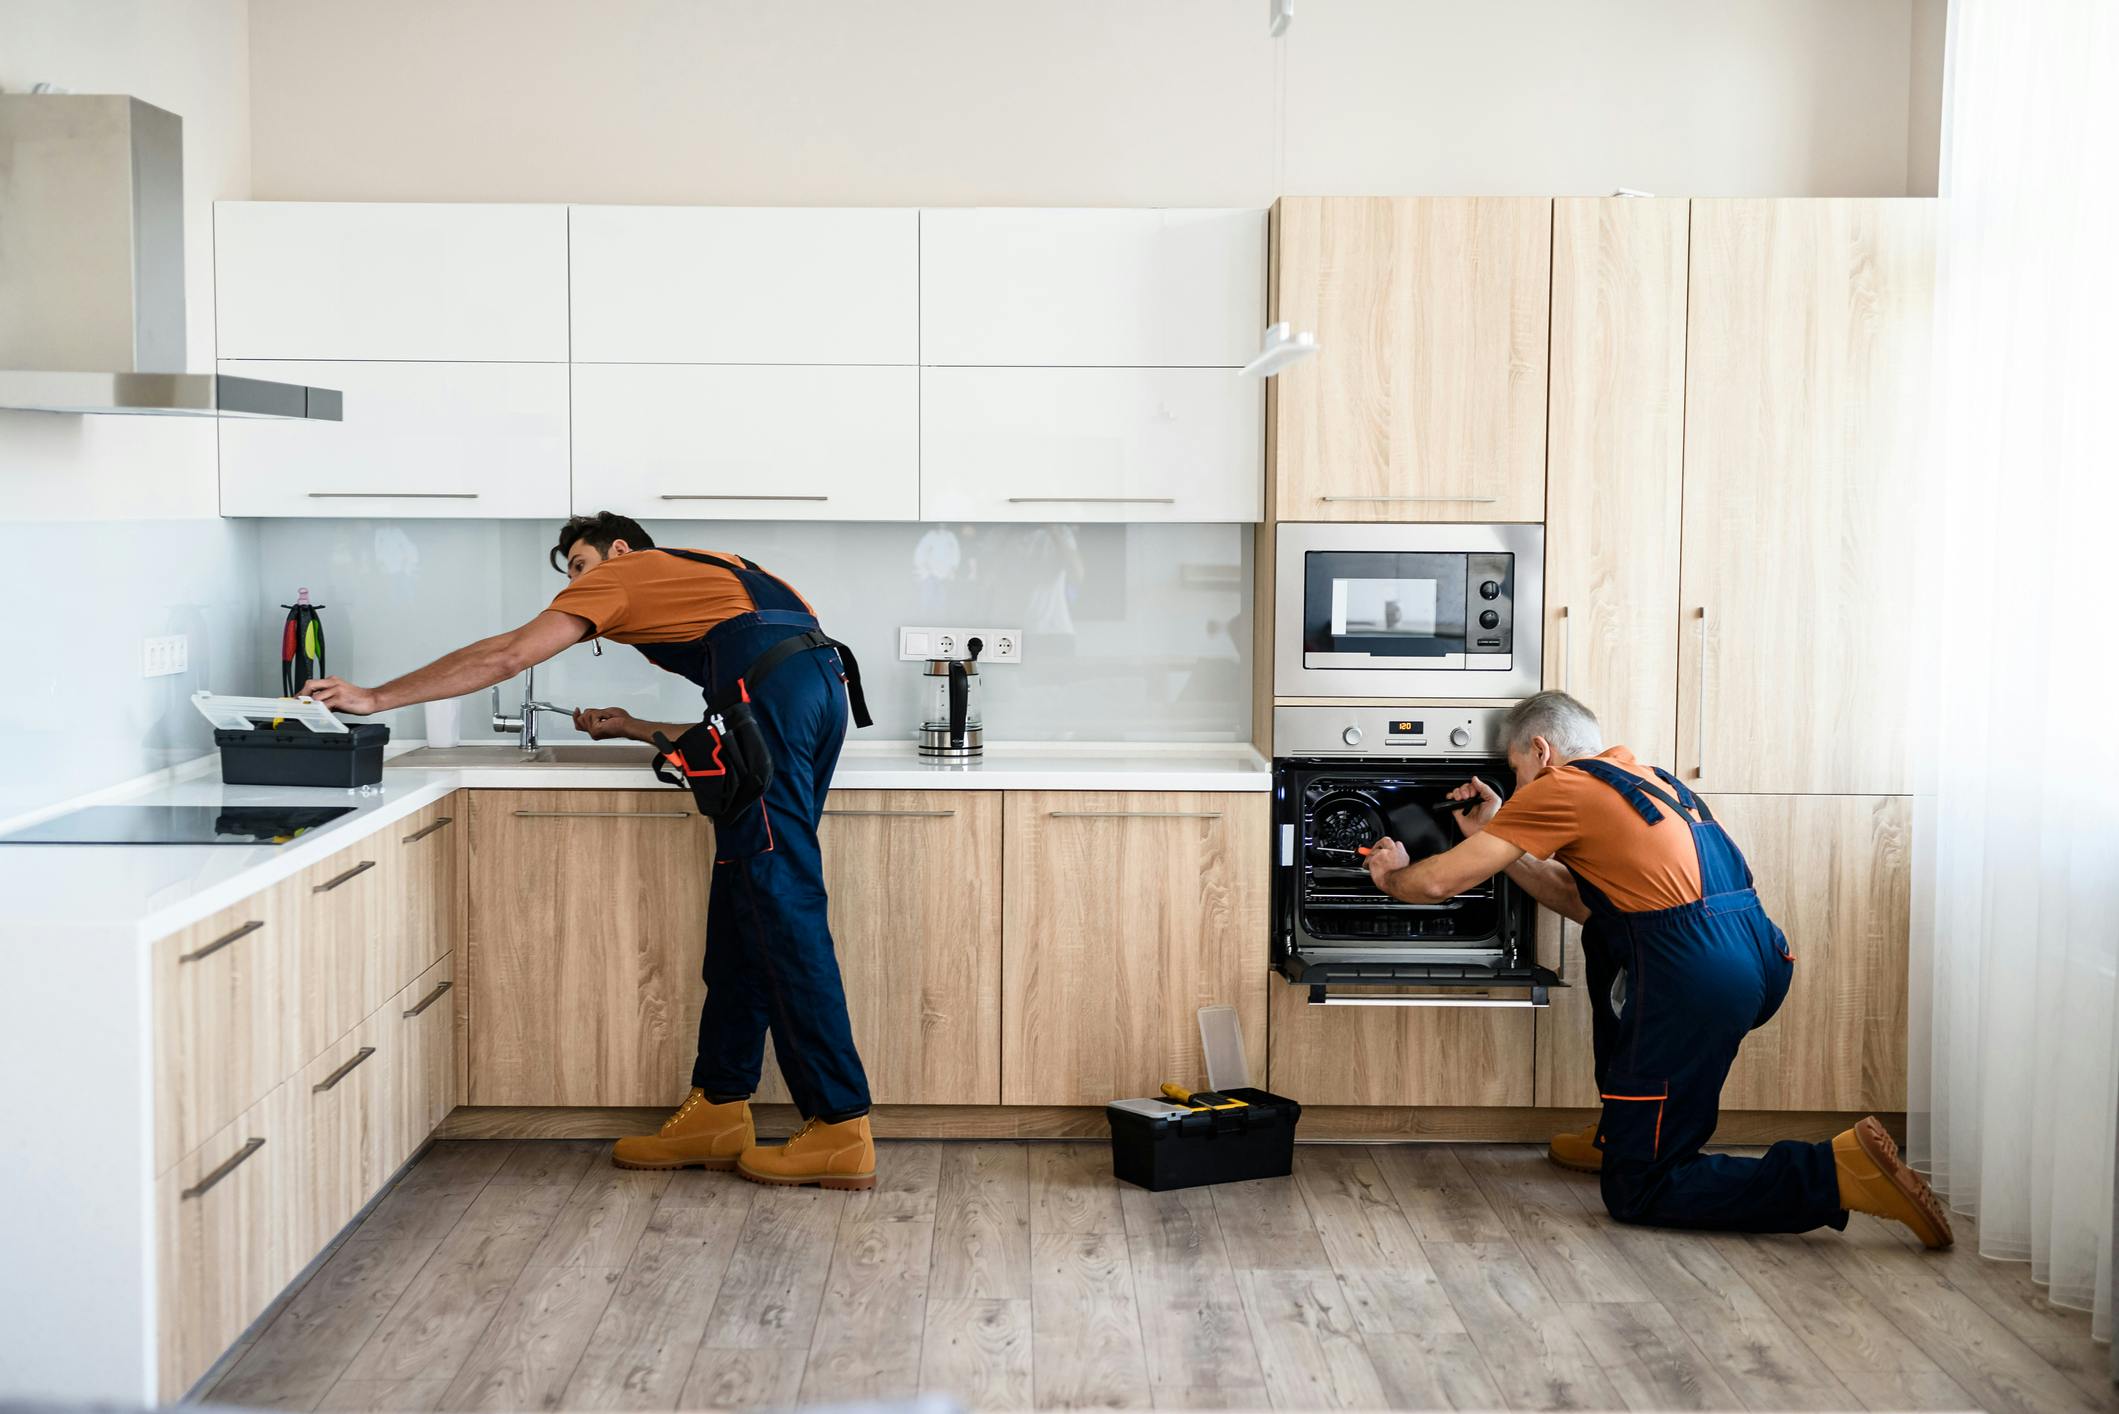 Two men renovating a kitchen